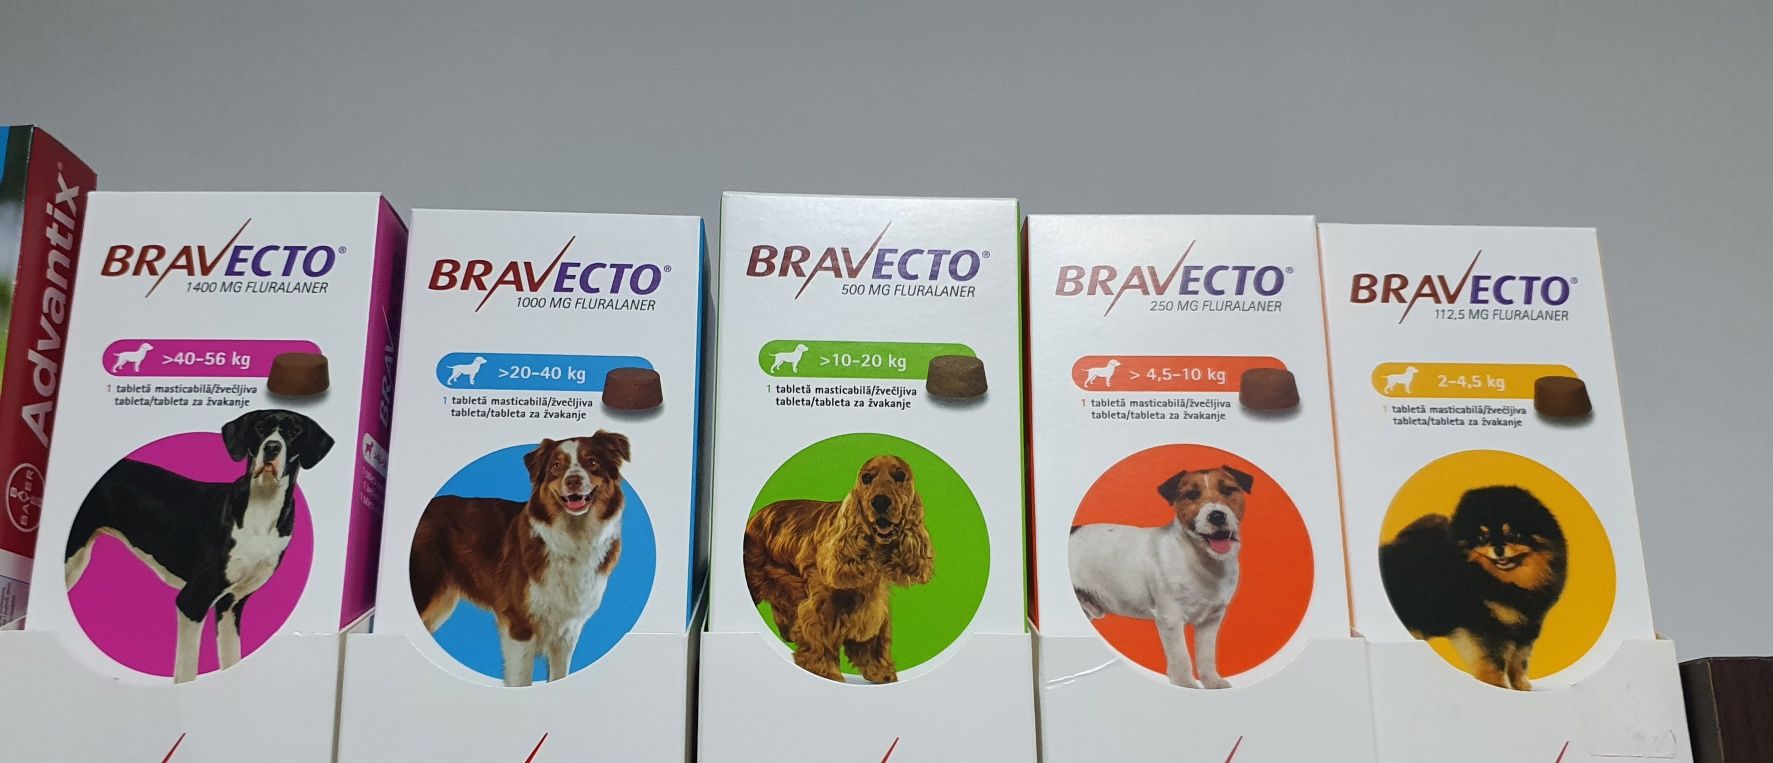 Petshop - Farmacie veterinara